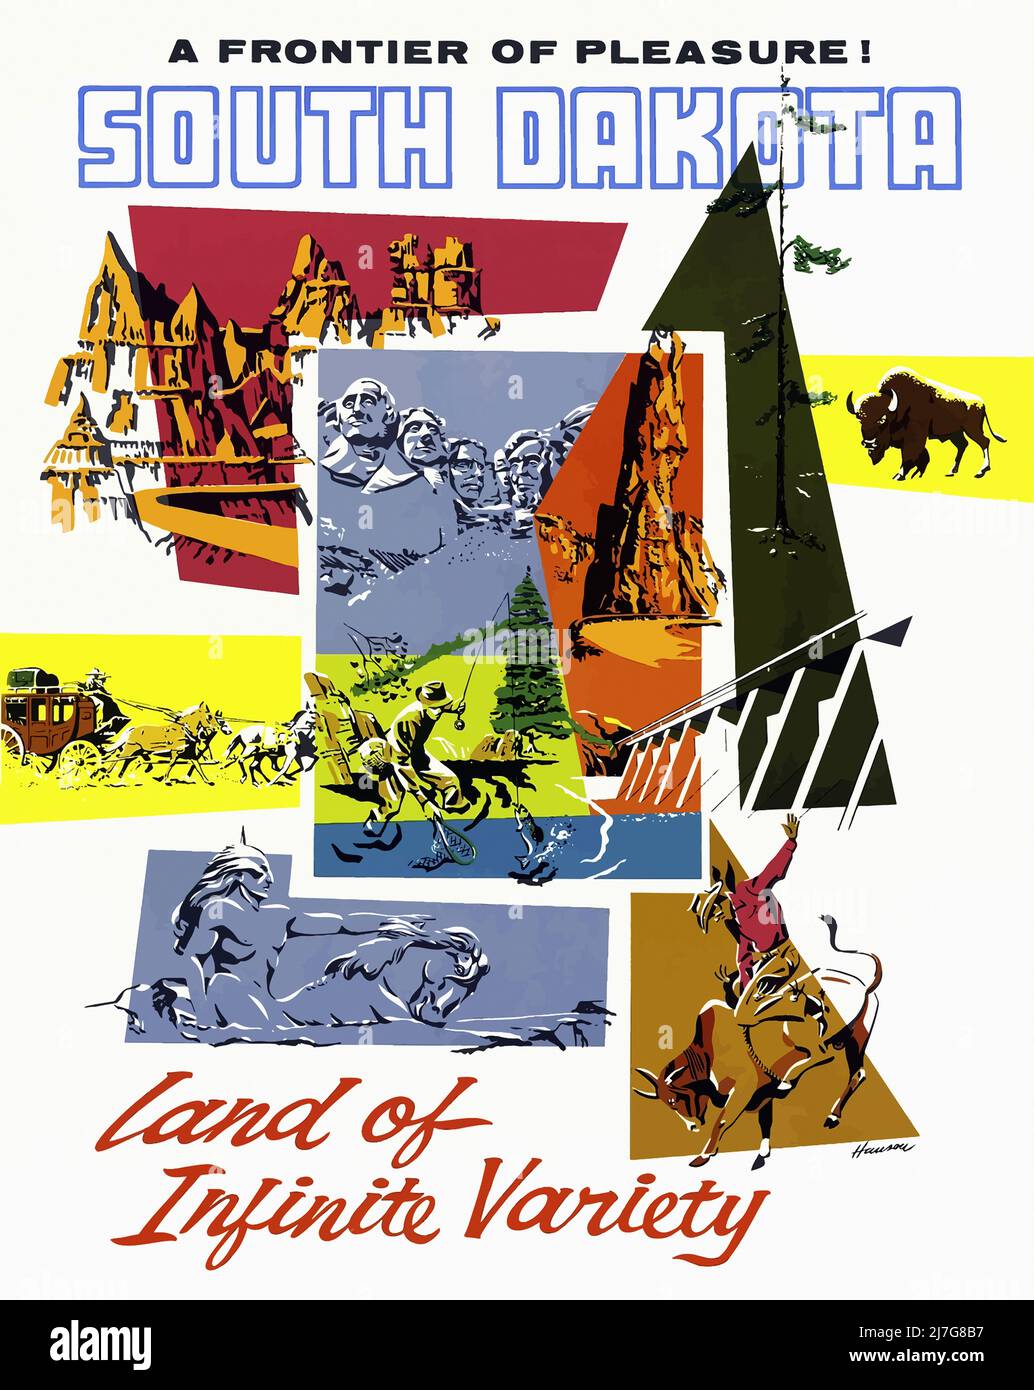 Vintage Travel Poster - South Dakota Stock Photo